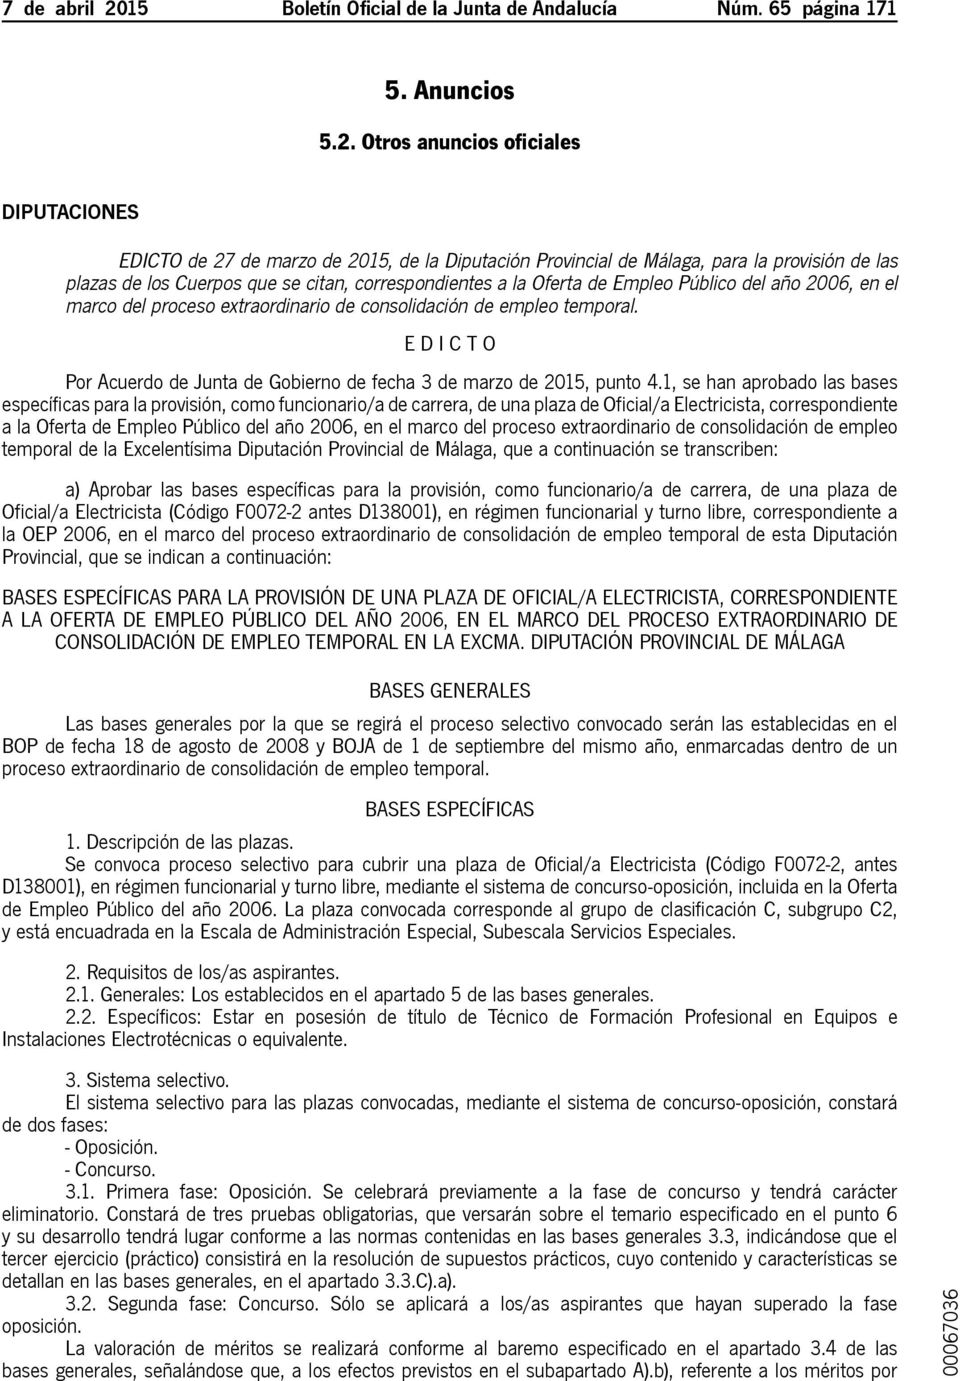 Otros anuncios oficiales Diputaciones Edicto de 27 de marzo de 2015, de la Diputación Provincial de Málaga, para la provisión de las plazas de los Cuerpos que se citan, correspondientes a la Oferta